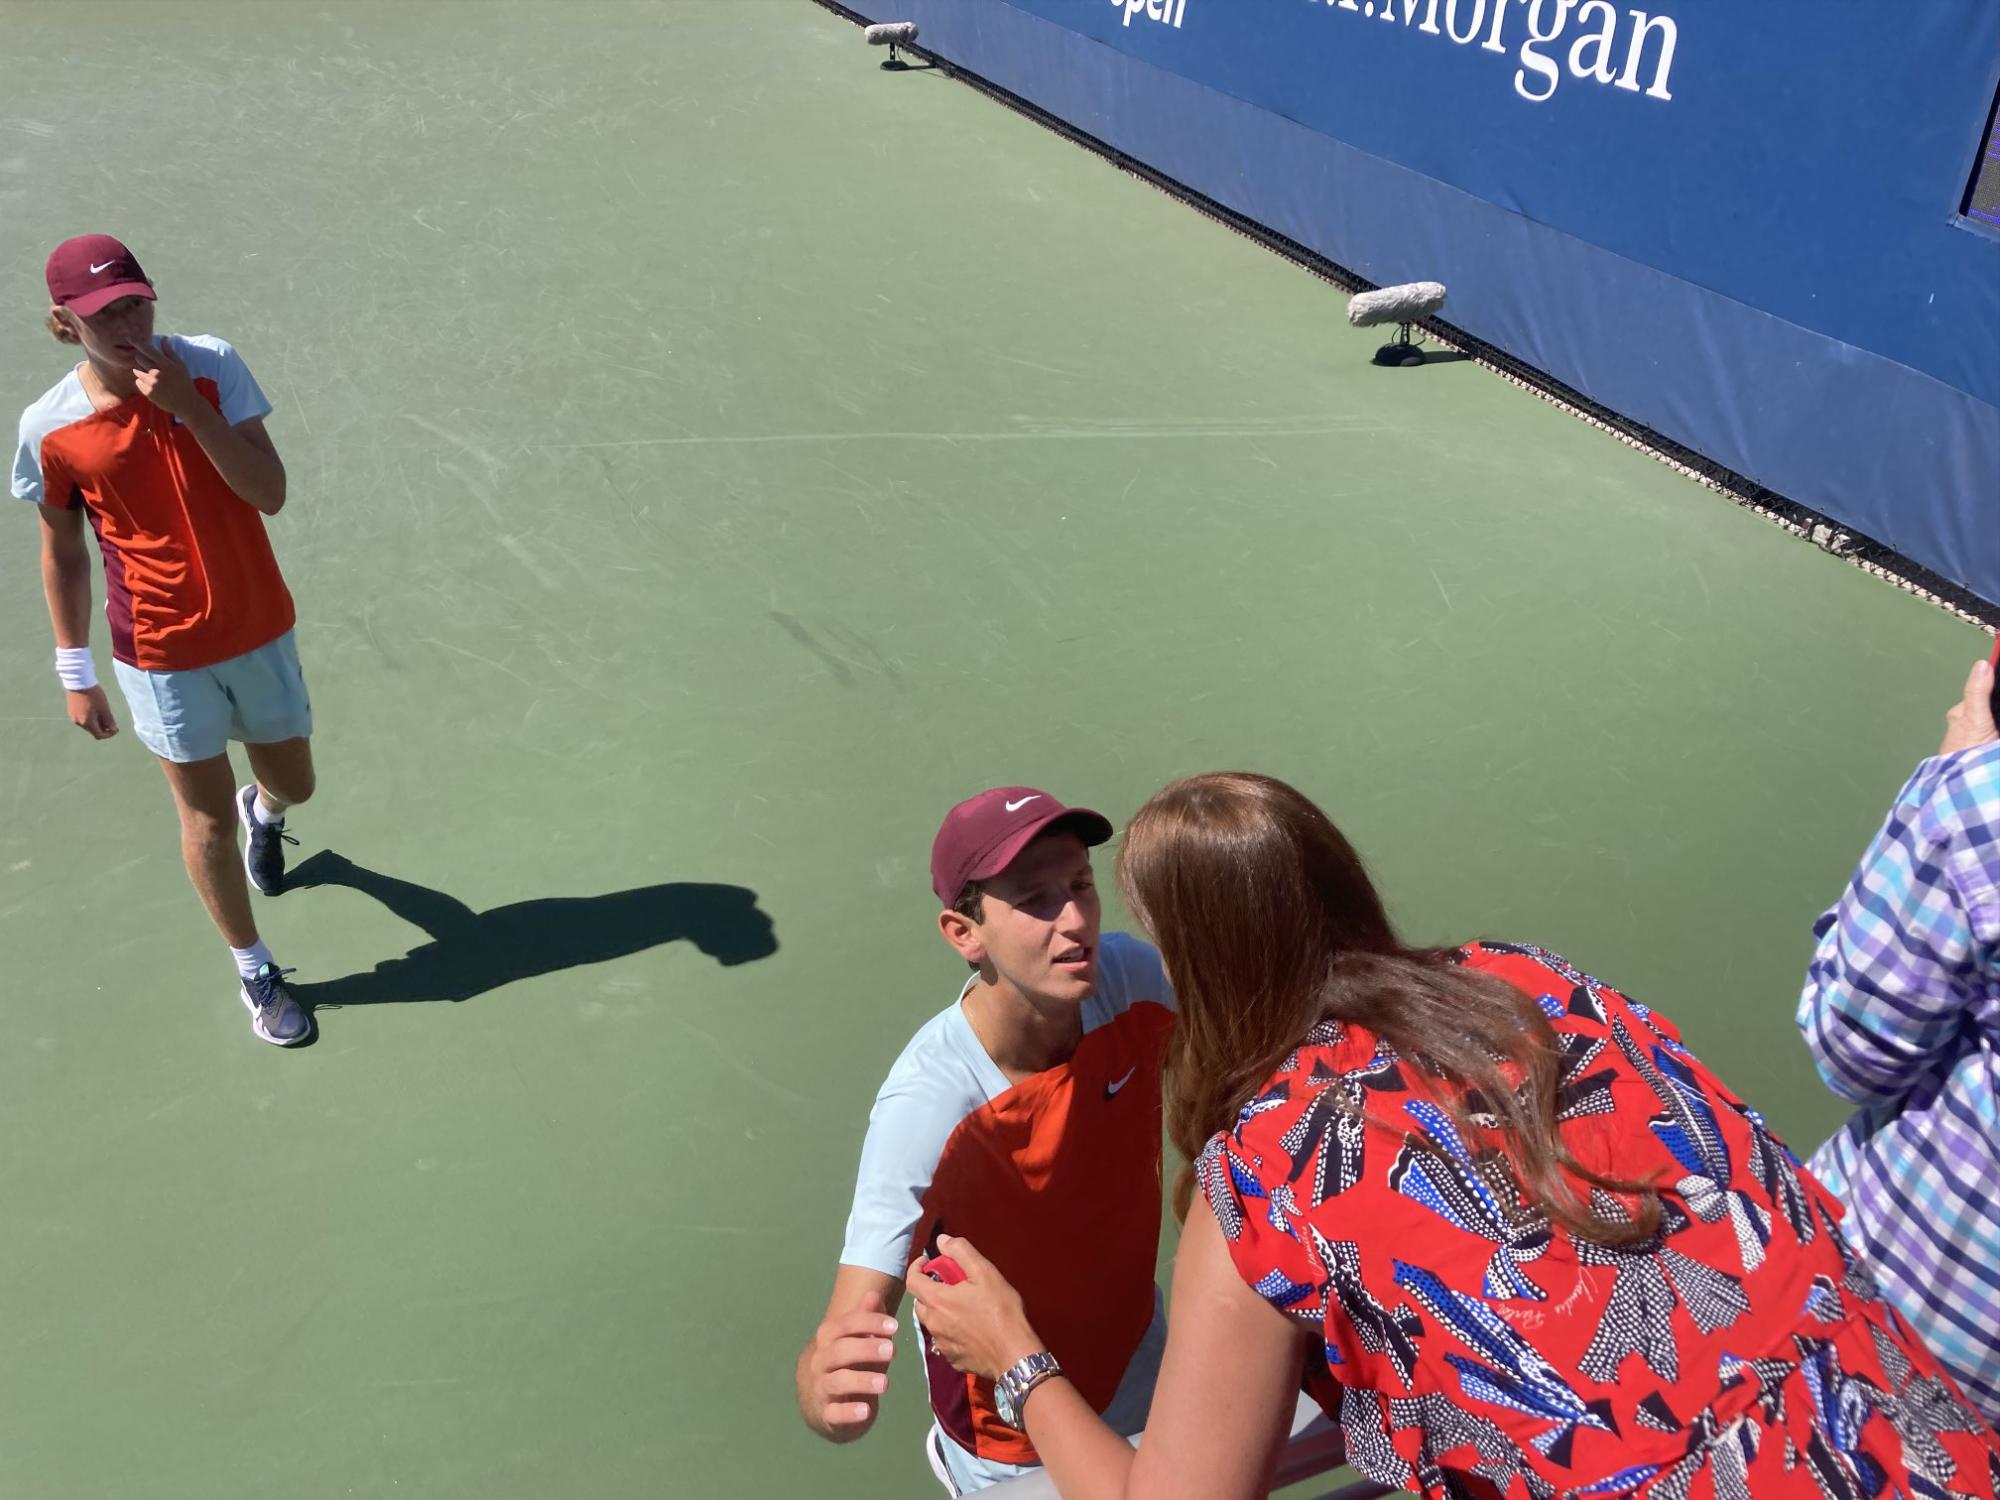 $!La ex tenista Mary Joe Fernandez abraza a su hijo Nicholas Godsick tras avanzar.